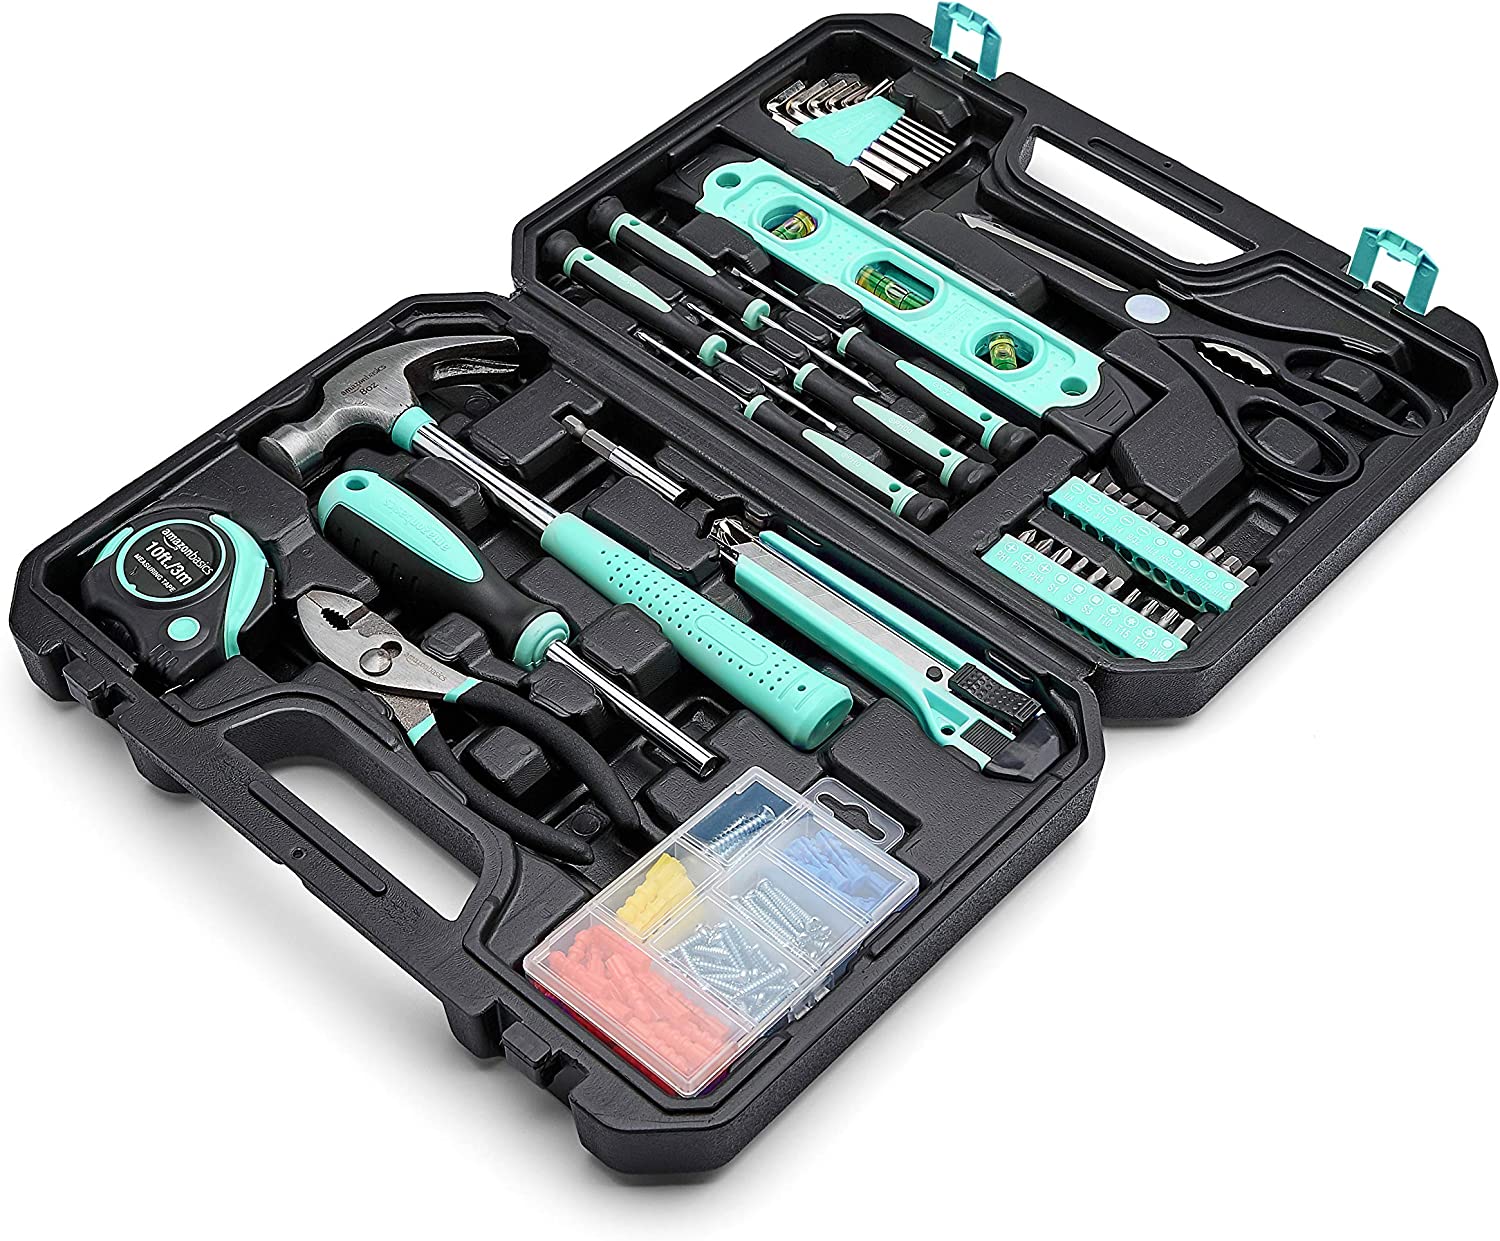 Amazon Basics Household Tool Kit With Storage Case, [...]